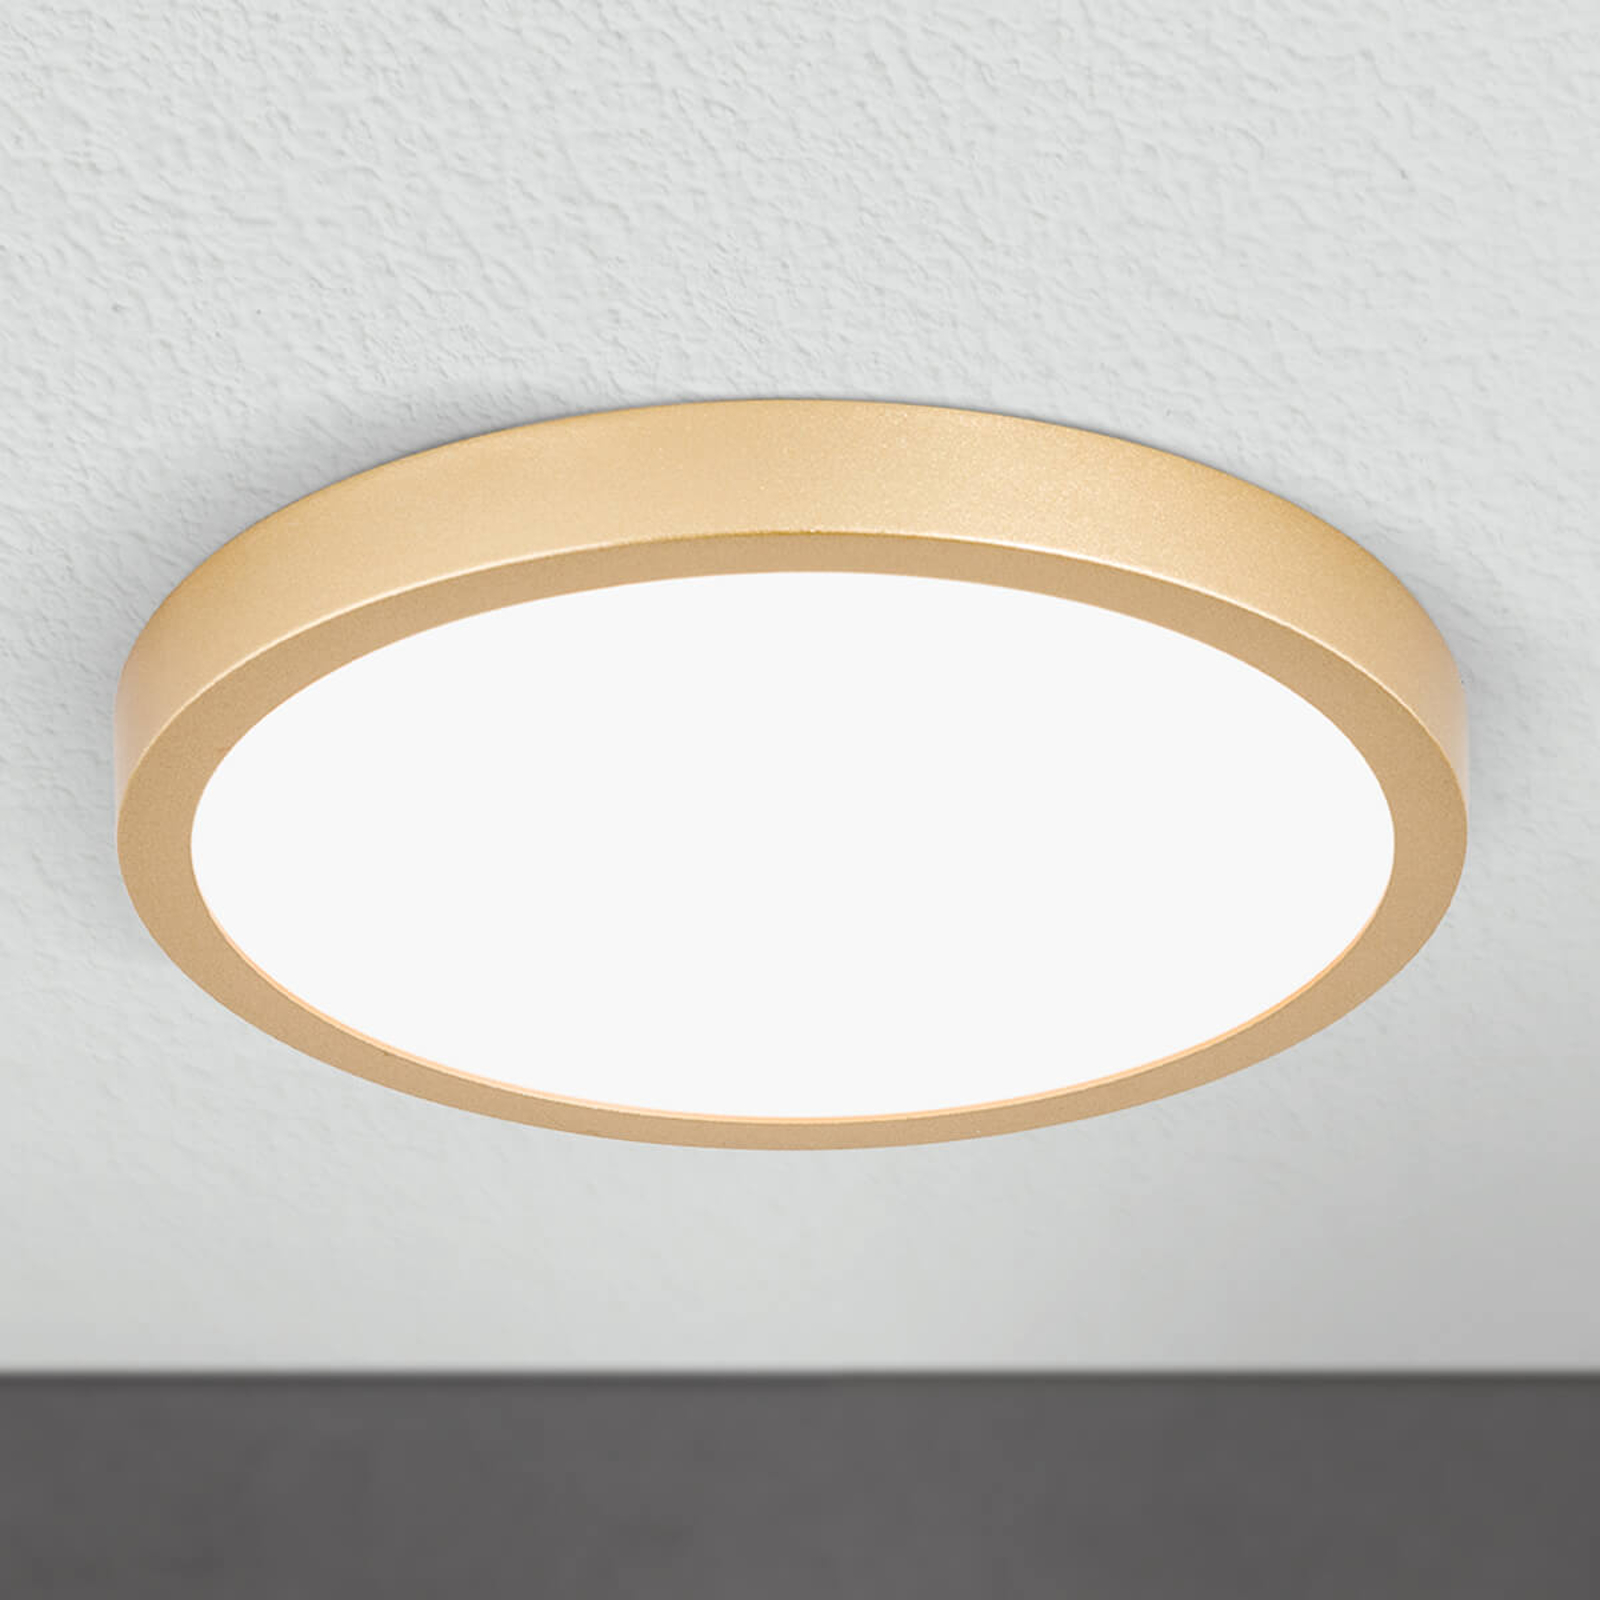 LED-kattovalaisin Vika, pyöreä, matta kulta Ø23 cm